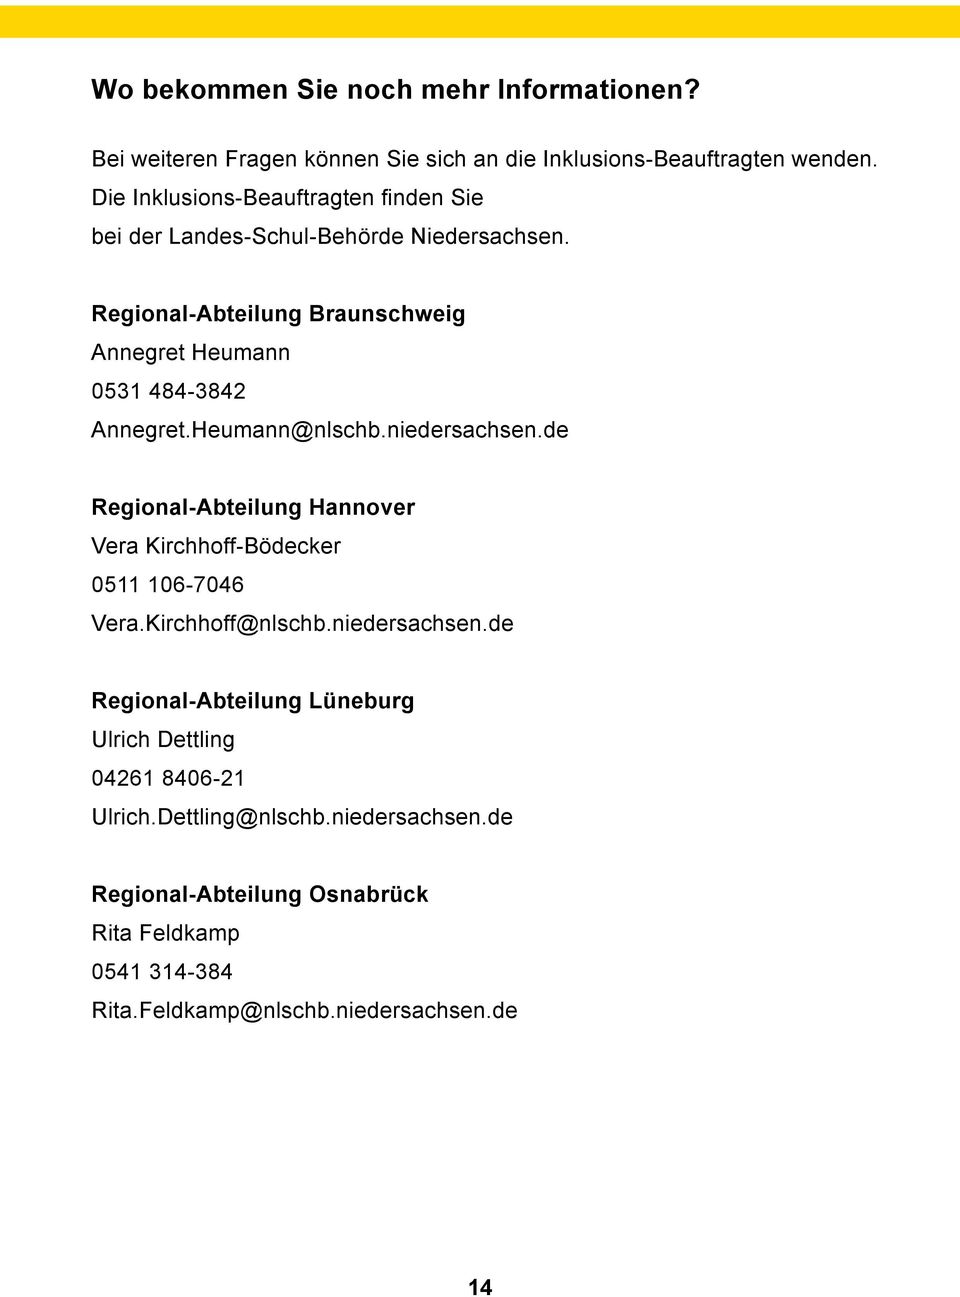 Regional-Abteilung Braunschweig Annegret Heumann 0531 484-3842 Annegret.Heumann@nlschb.niedersachsen.